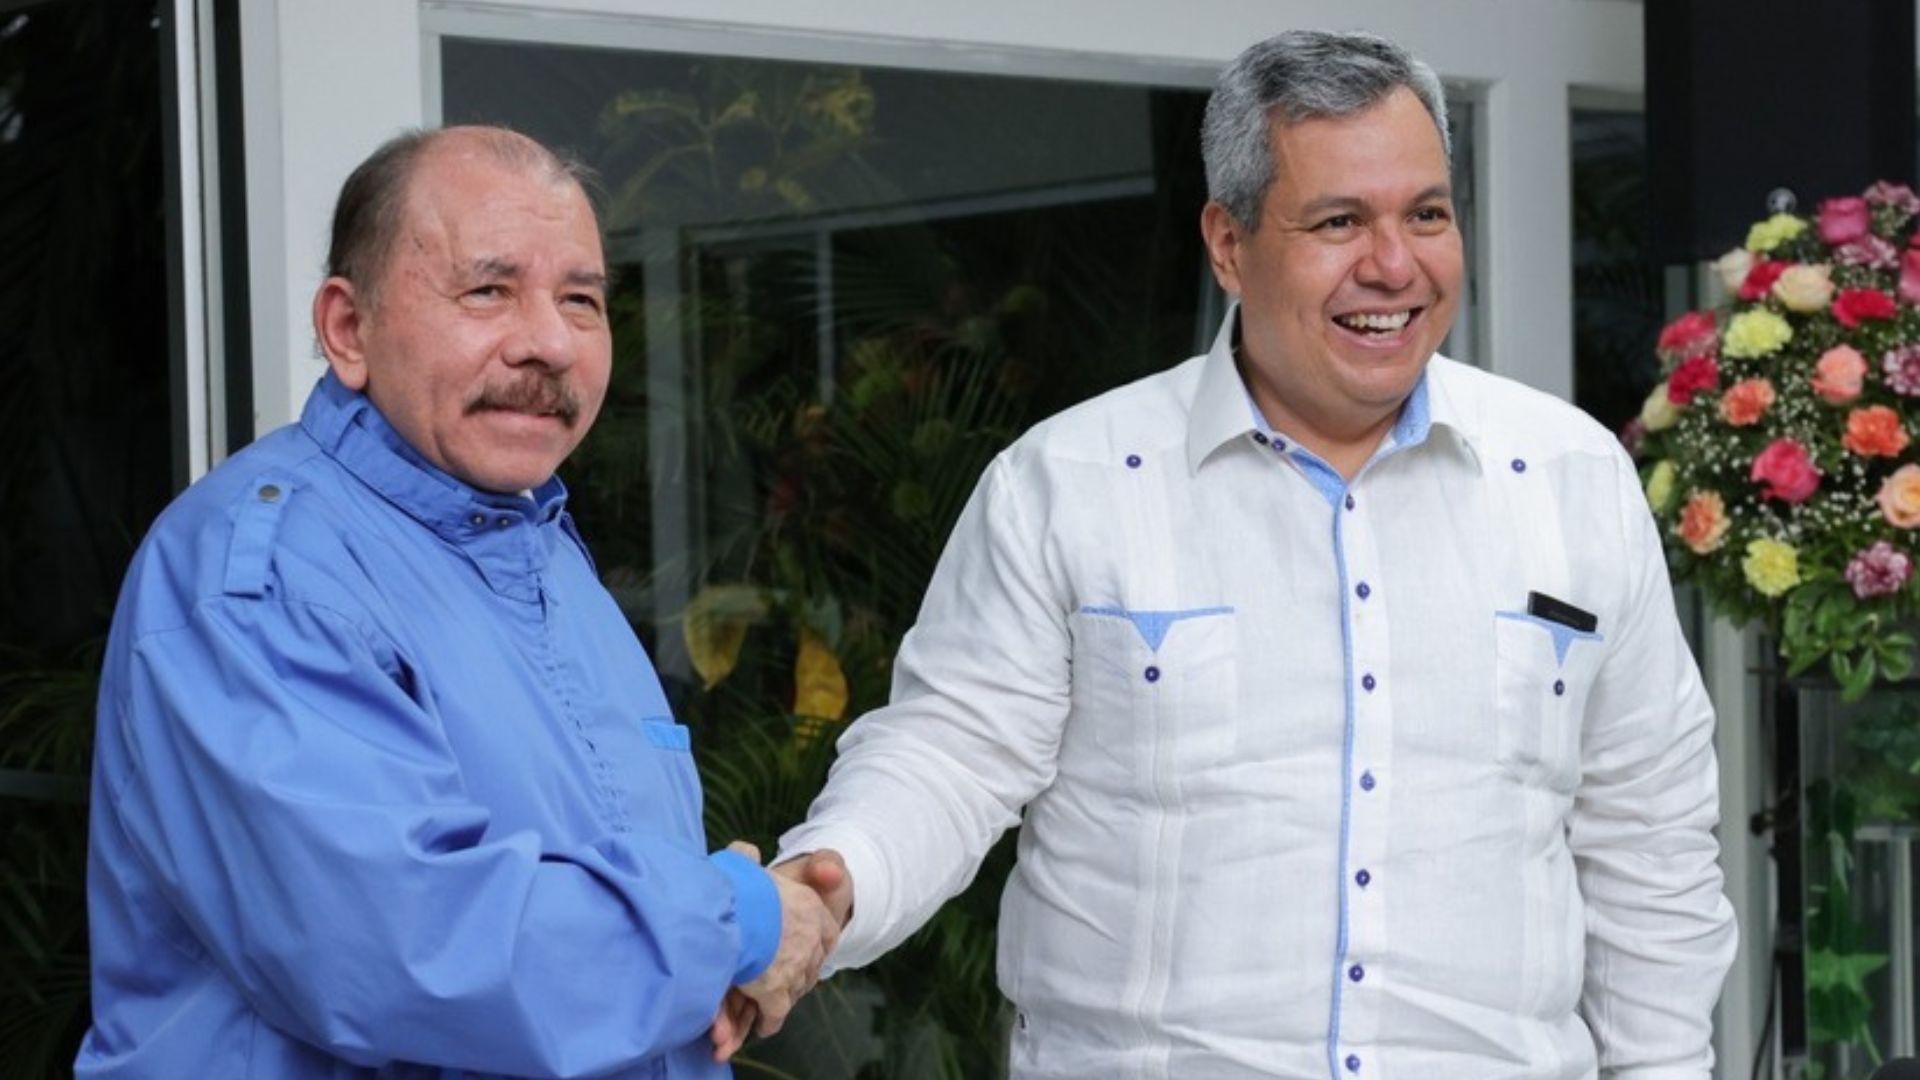 Dante Mossi will defend financial support for Ortega in a public debate